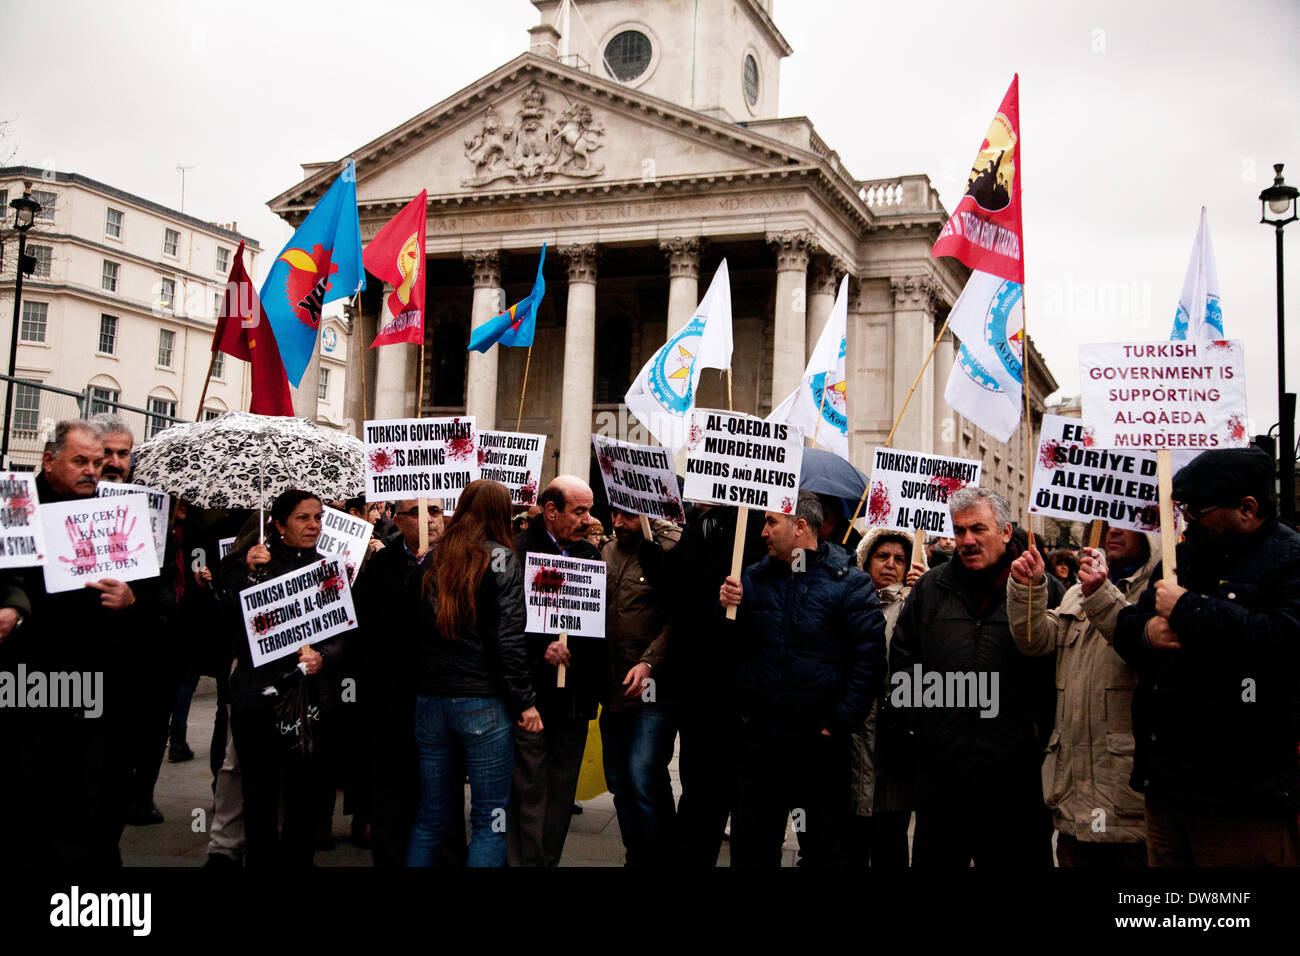 Londra, Regno Unito. 2 Marzo, 2014. I dimostranti si riuniscono a Trafalgar Square a manifestare contro il governo turco che a loro dire è sostenere " di al-Qaeda assassini". Credito: Adina Tovy/Alamy Live News Foto Stock